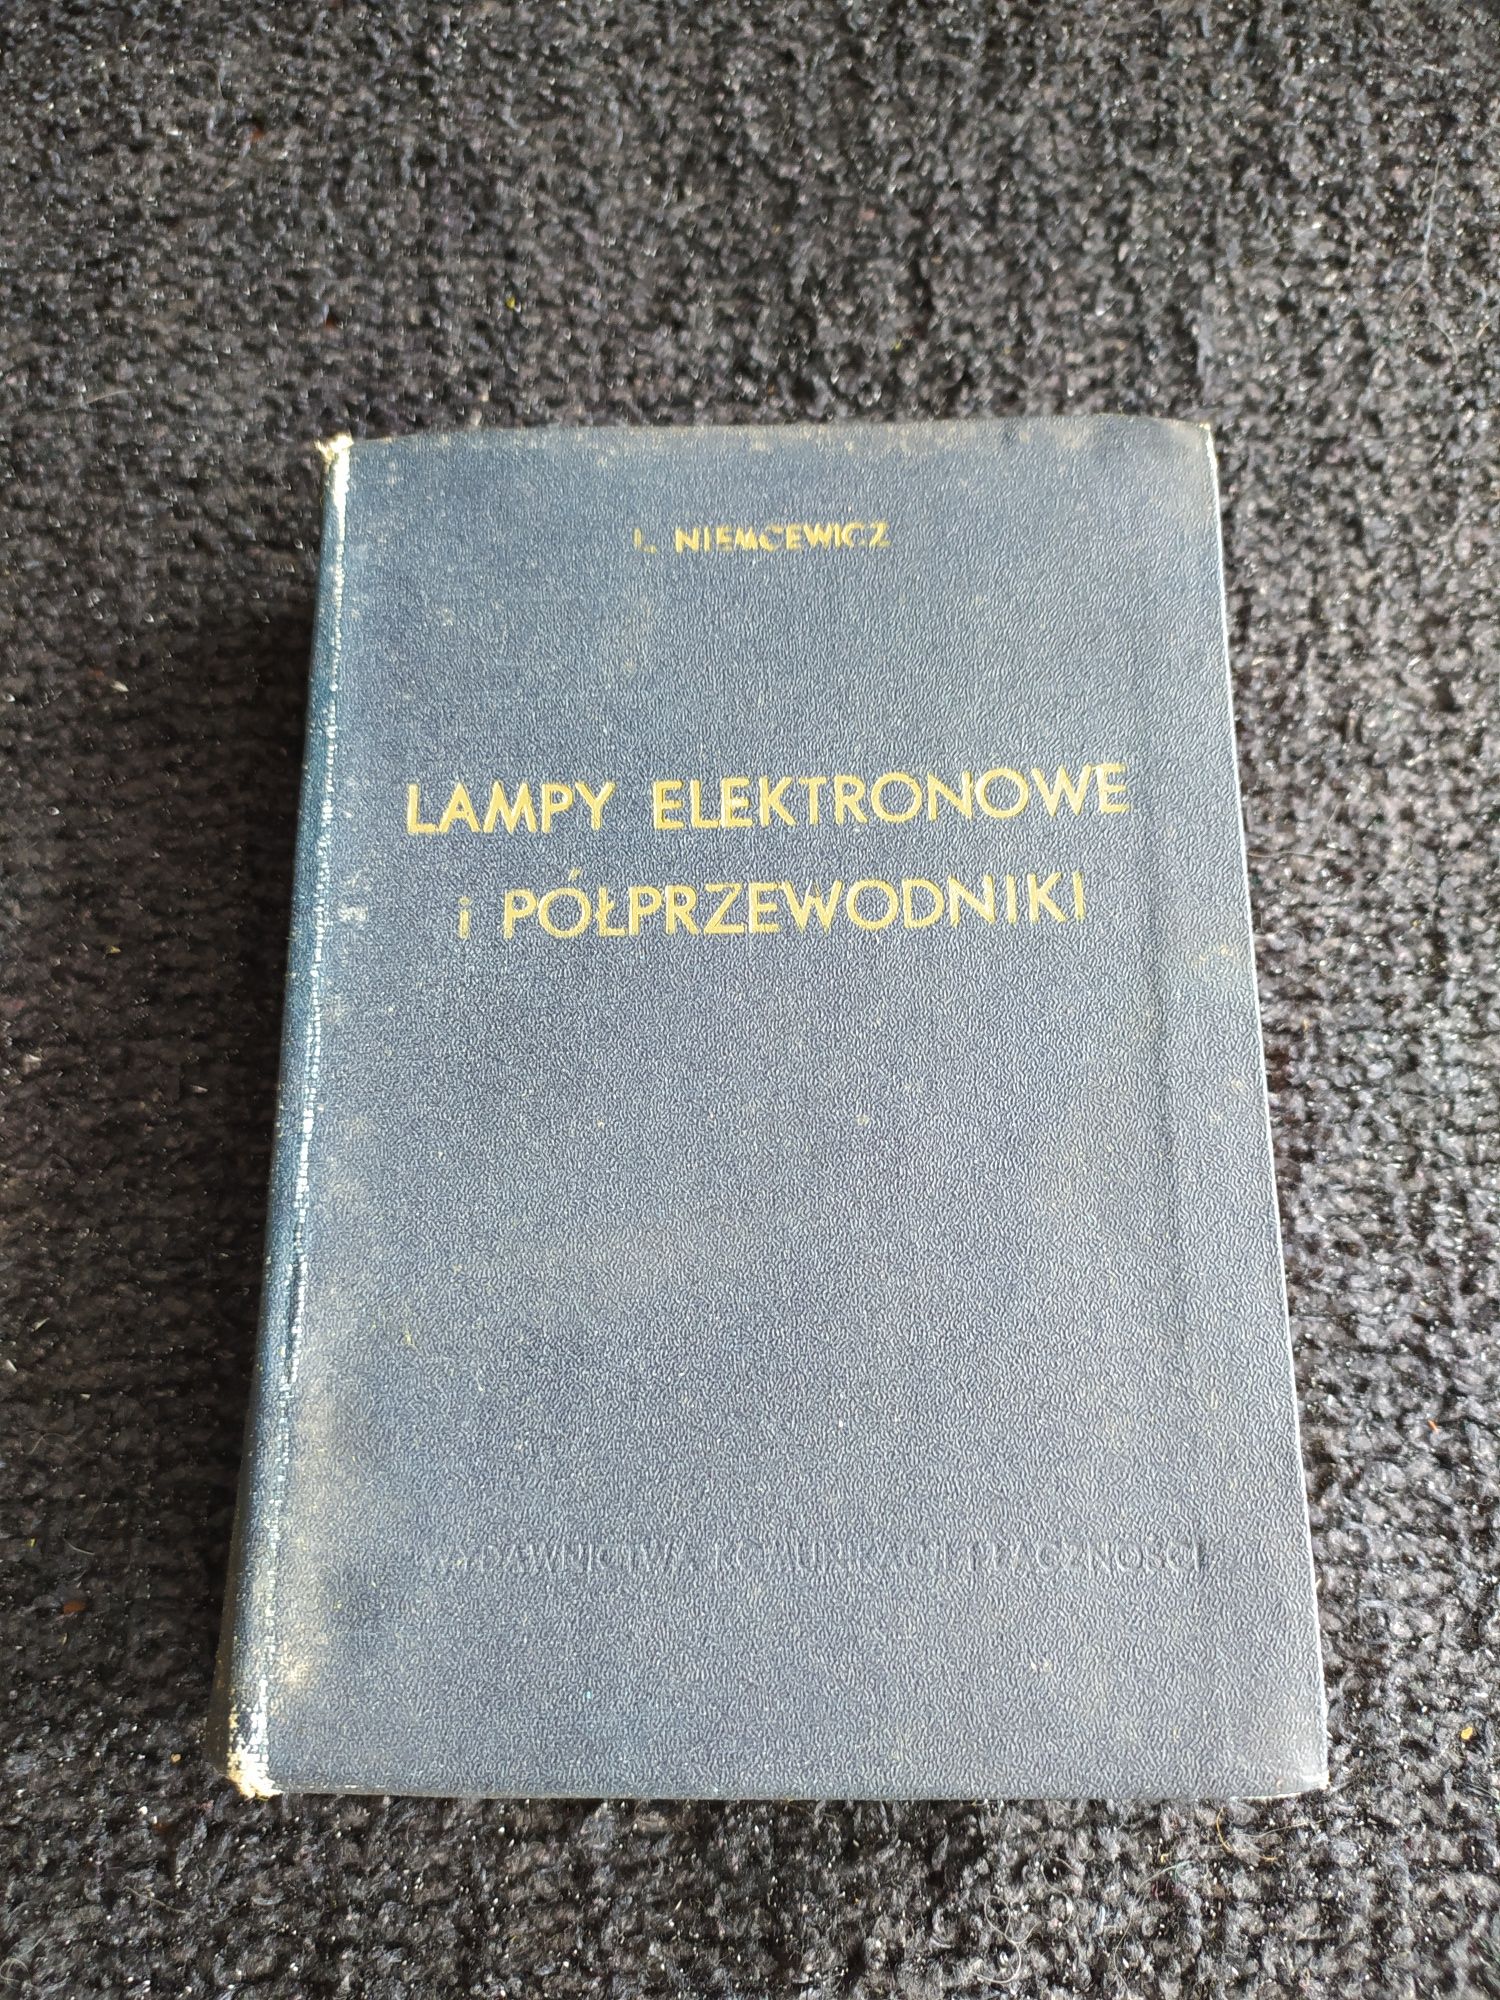 Lampy elektronowe i półprzewodniki L.Niemcewicz